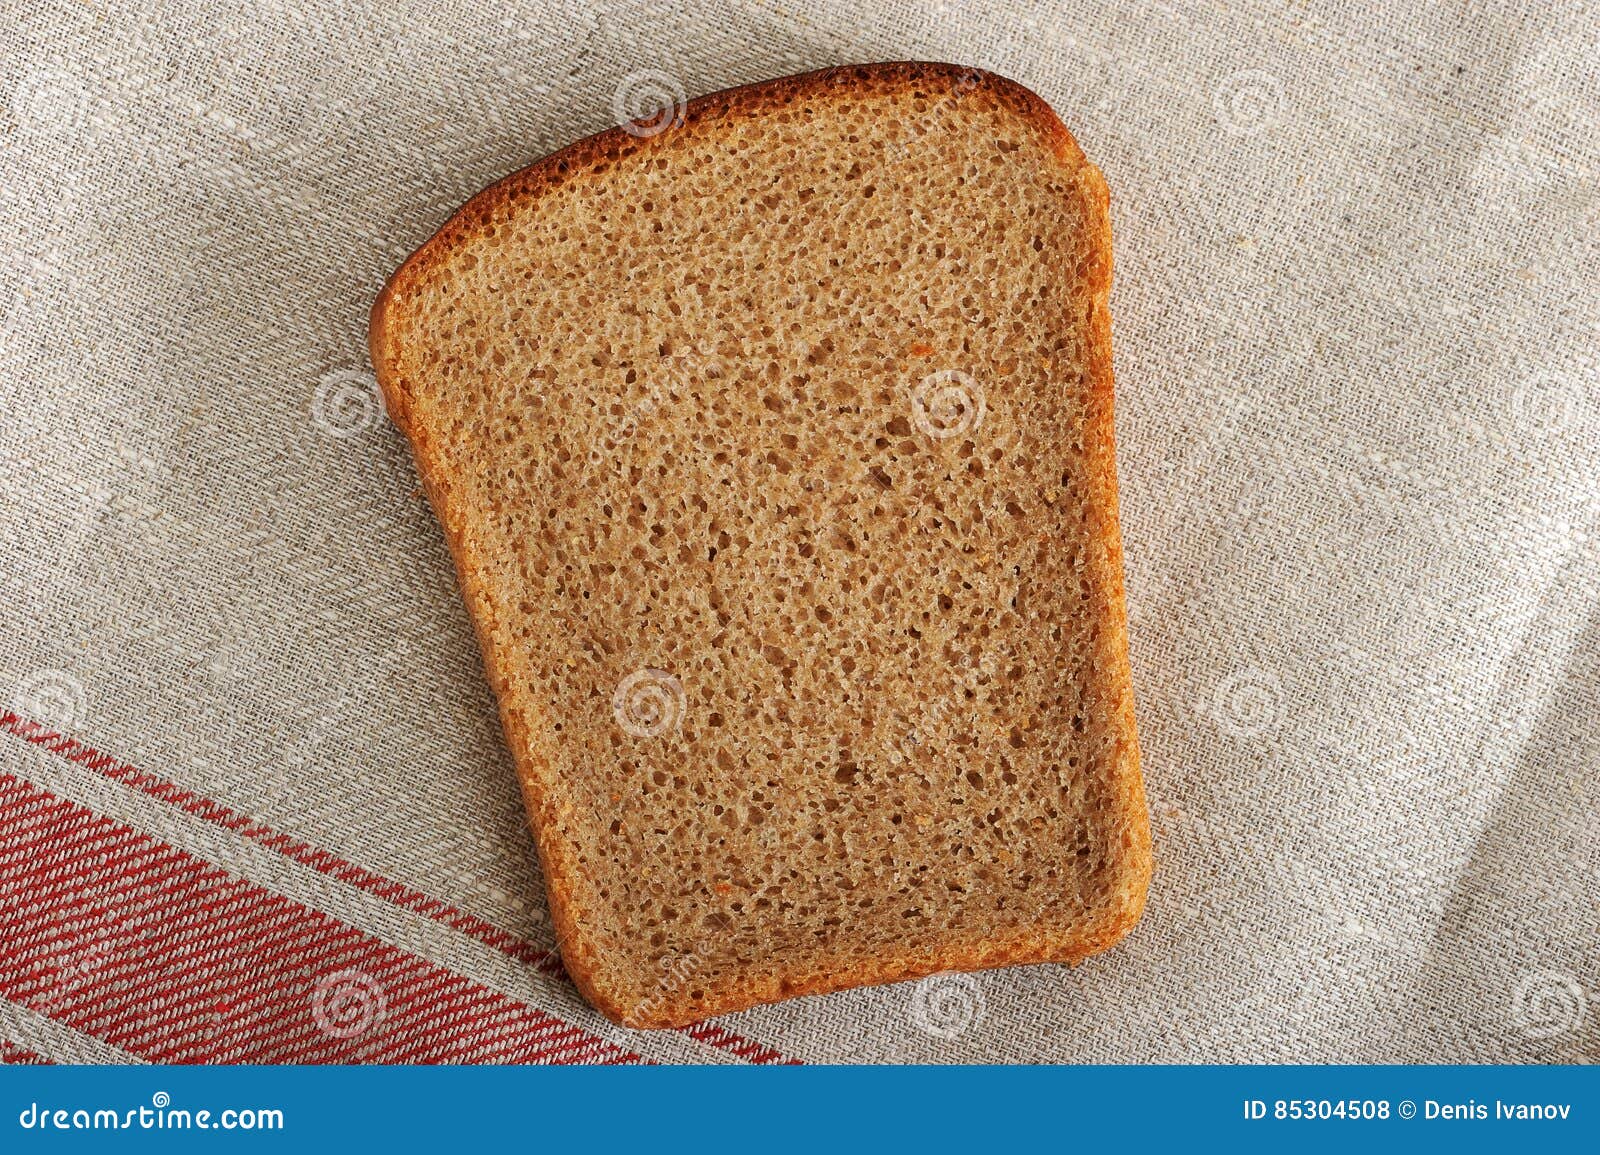 Вес ржаного хлеба. Ломтик Дарницкого хлеба. Вес ломтика хлеба. Кусок ржаного хлеба вес. Вес кусочка Дарницкого хлеба.